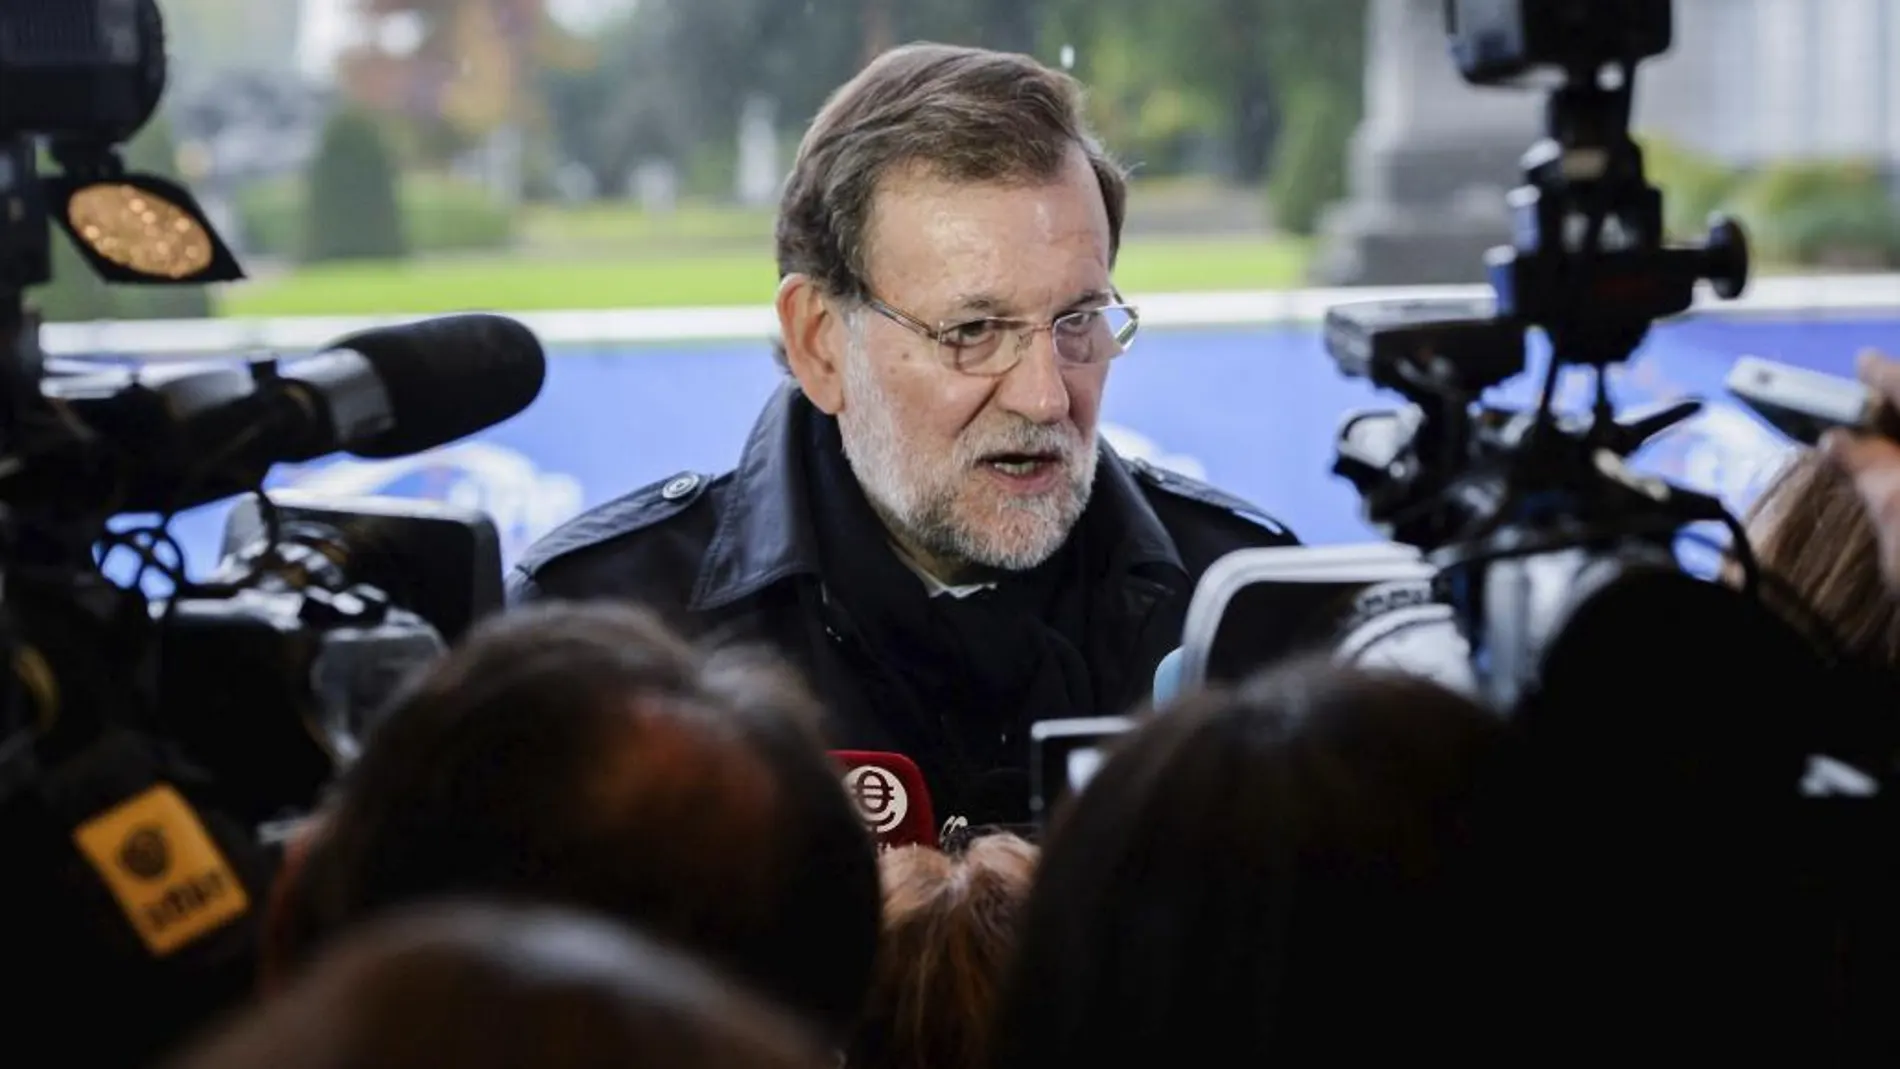 El presidente del Gobierno, Mariano Rajoy, atiende a los medios de comunicación a su llegada a la reunión de líderes del Partido Popular Europeo (PPE) previa a la cumbre de jefes de Estado y de Gobierno de la UE, en Bruselas